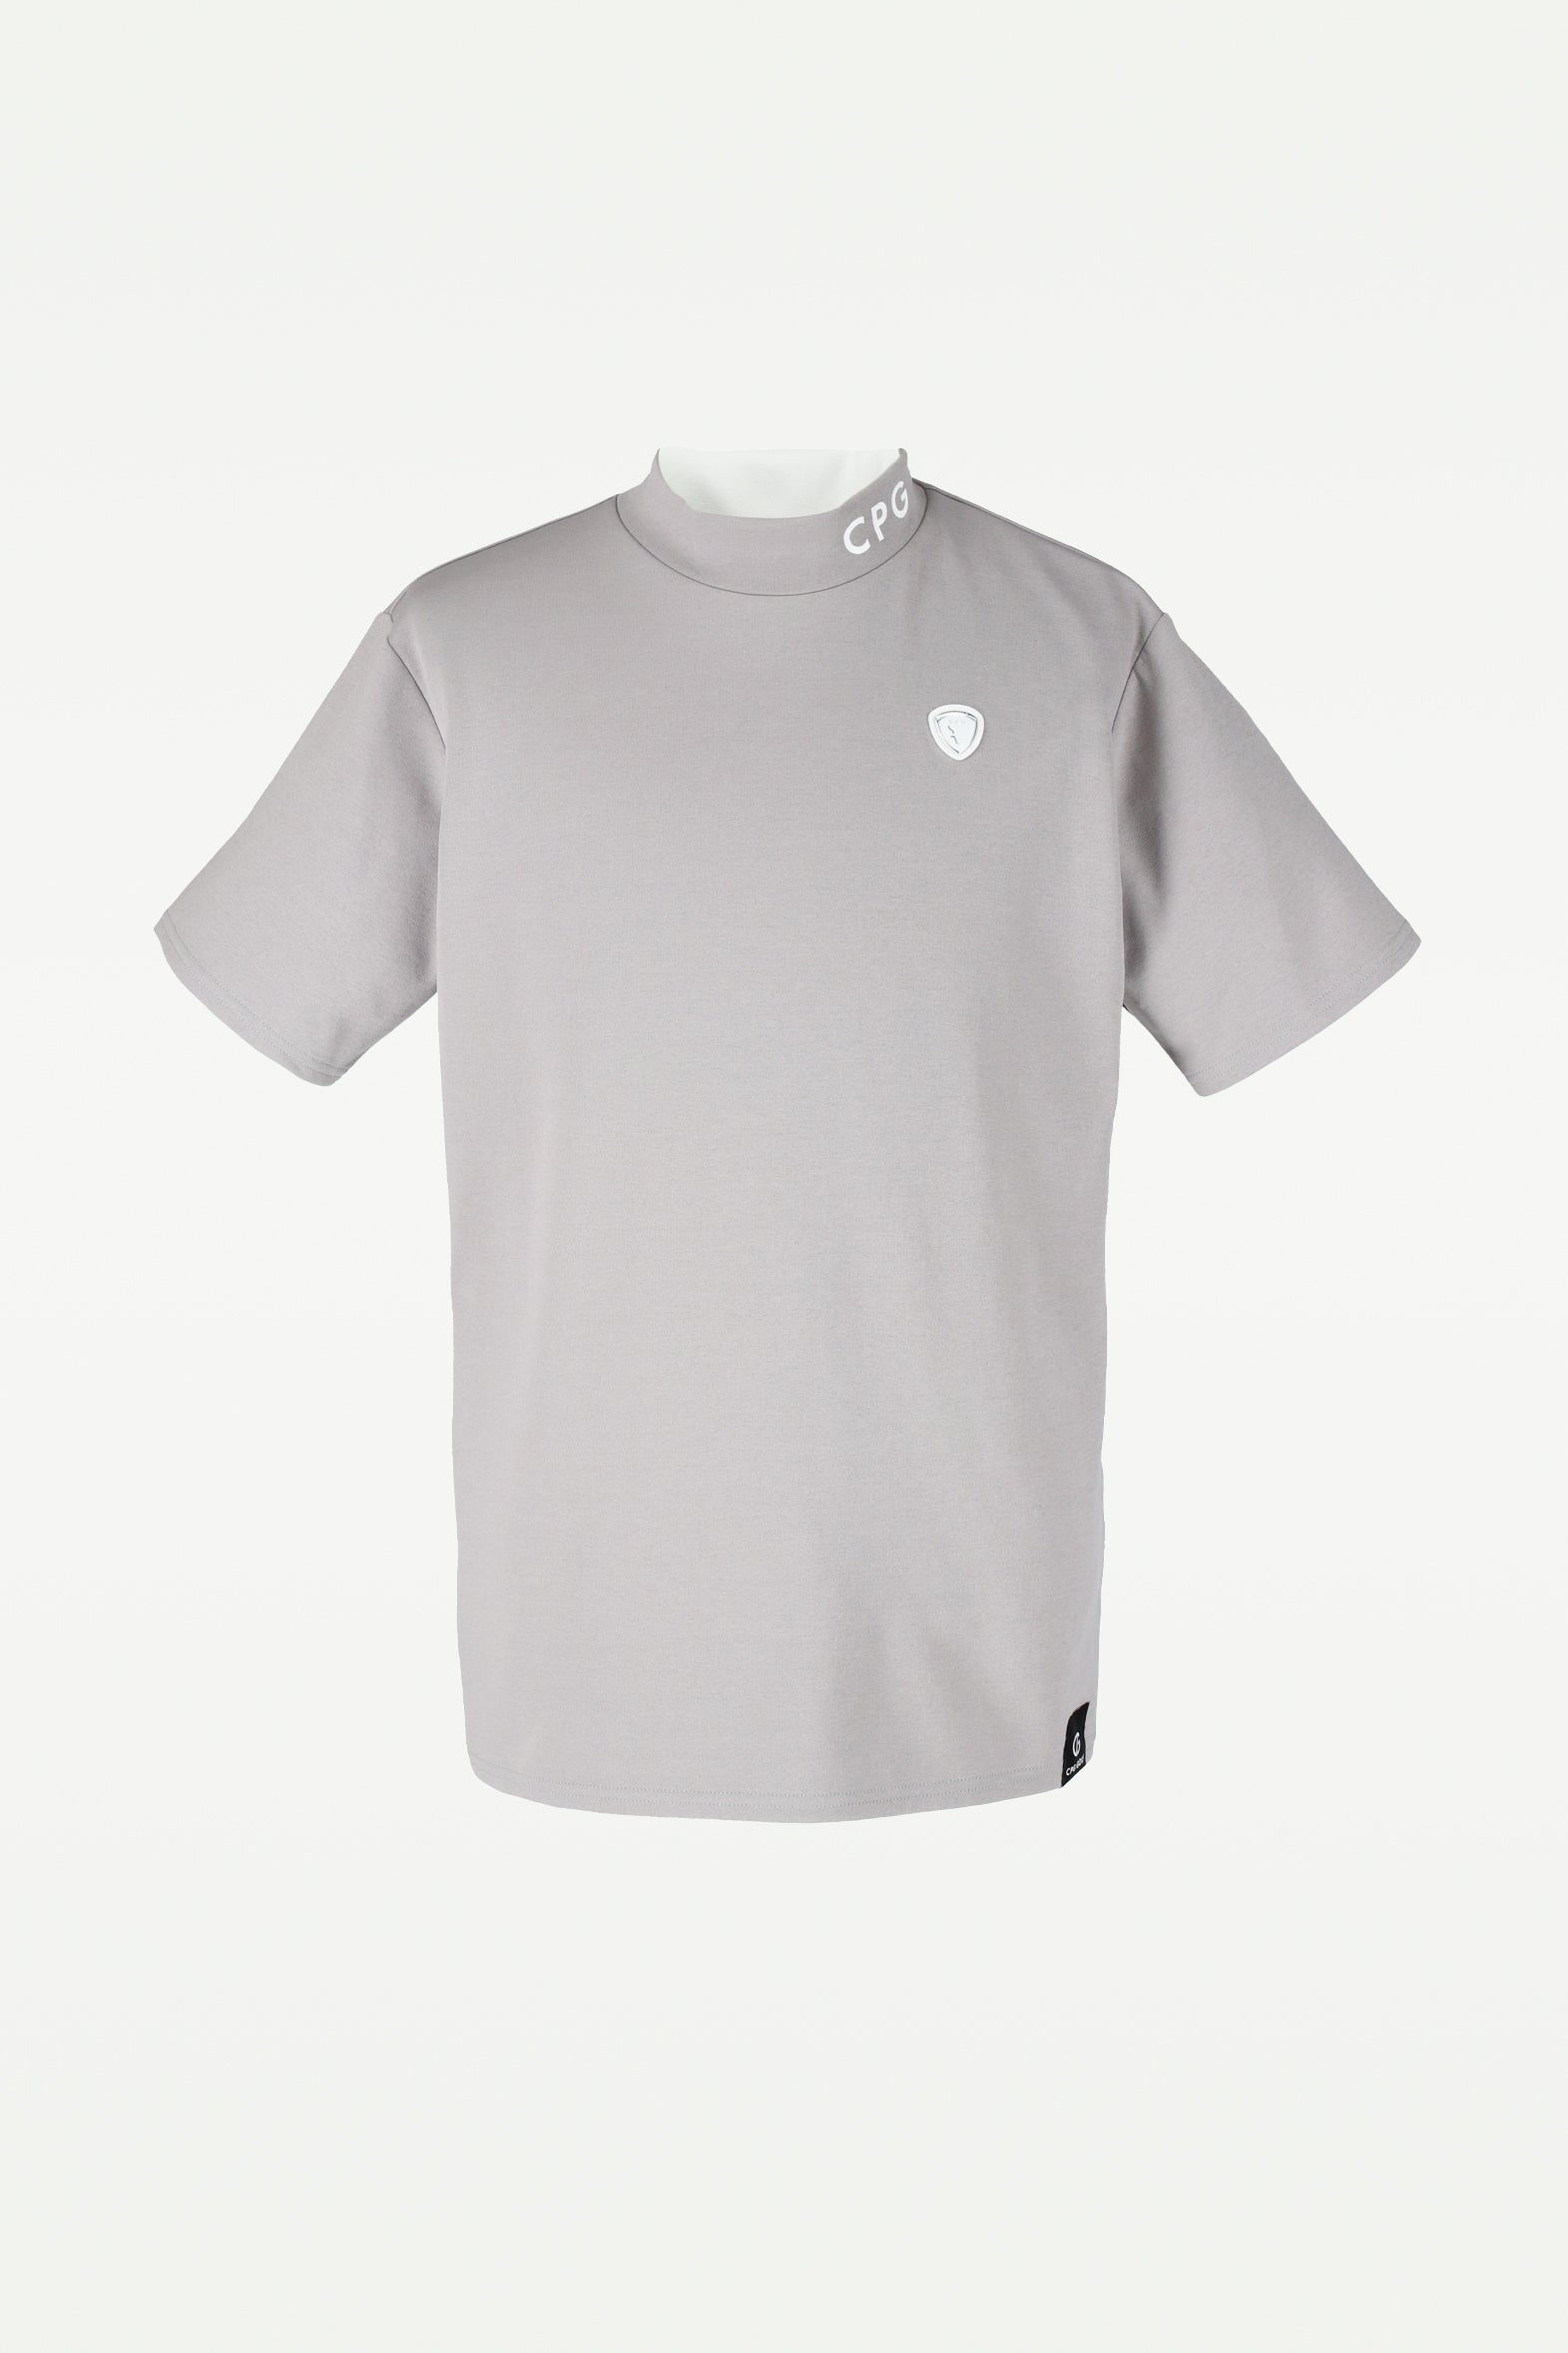 CPG GOLF シーピージーゴルフ ゴルフウェア メンズ 半袖 Tシャツ 